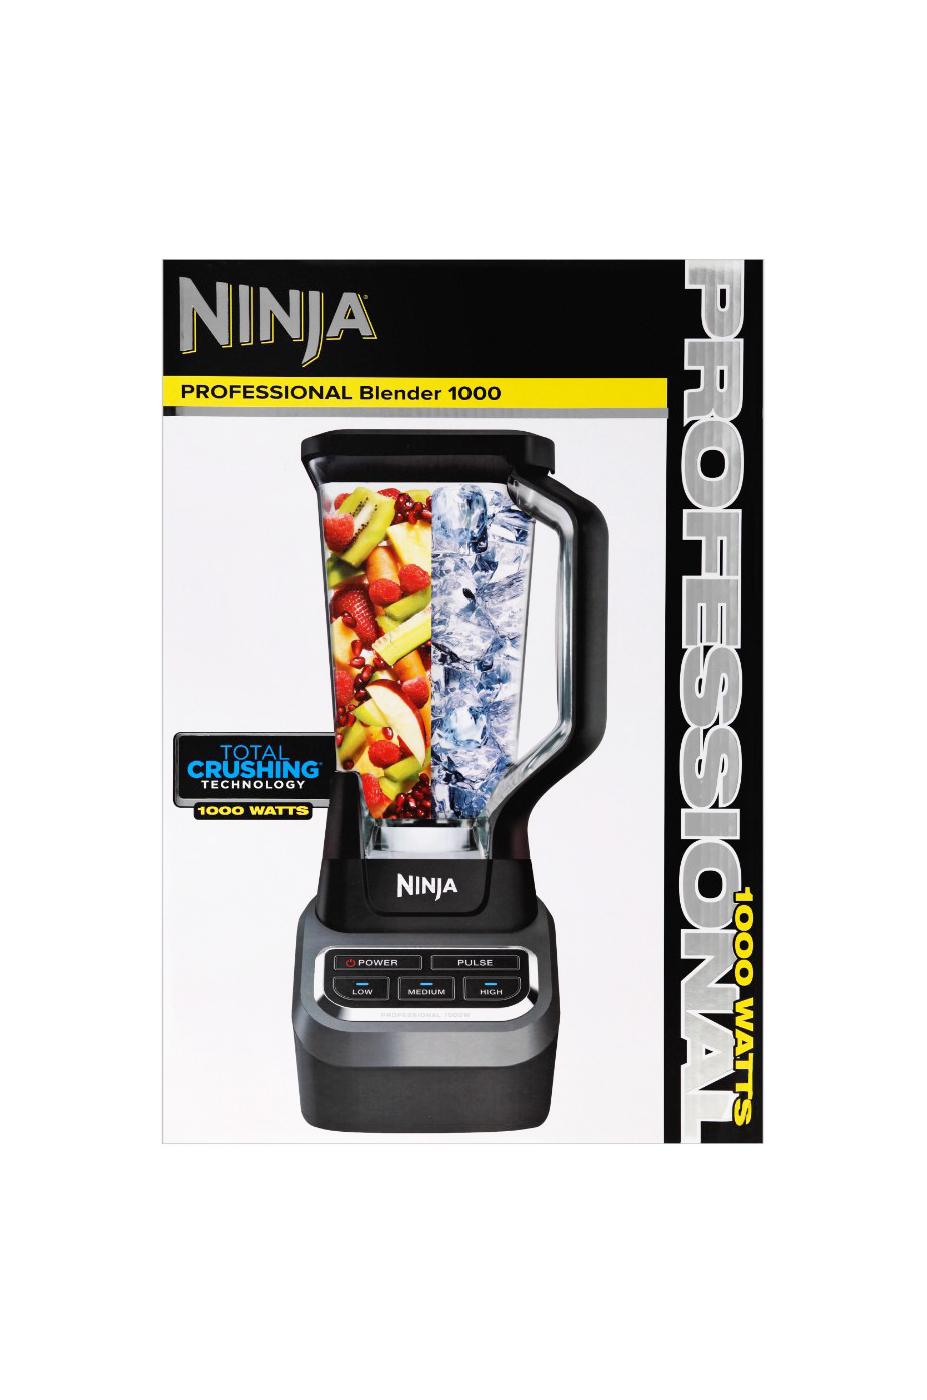 Ninja Professional Blender 1000 (BL610) vs Oster Pro 1200 Blender